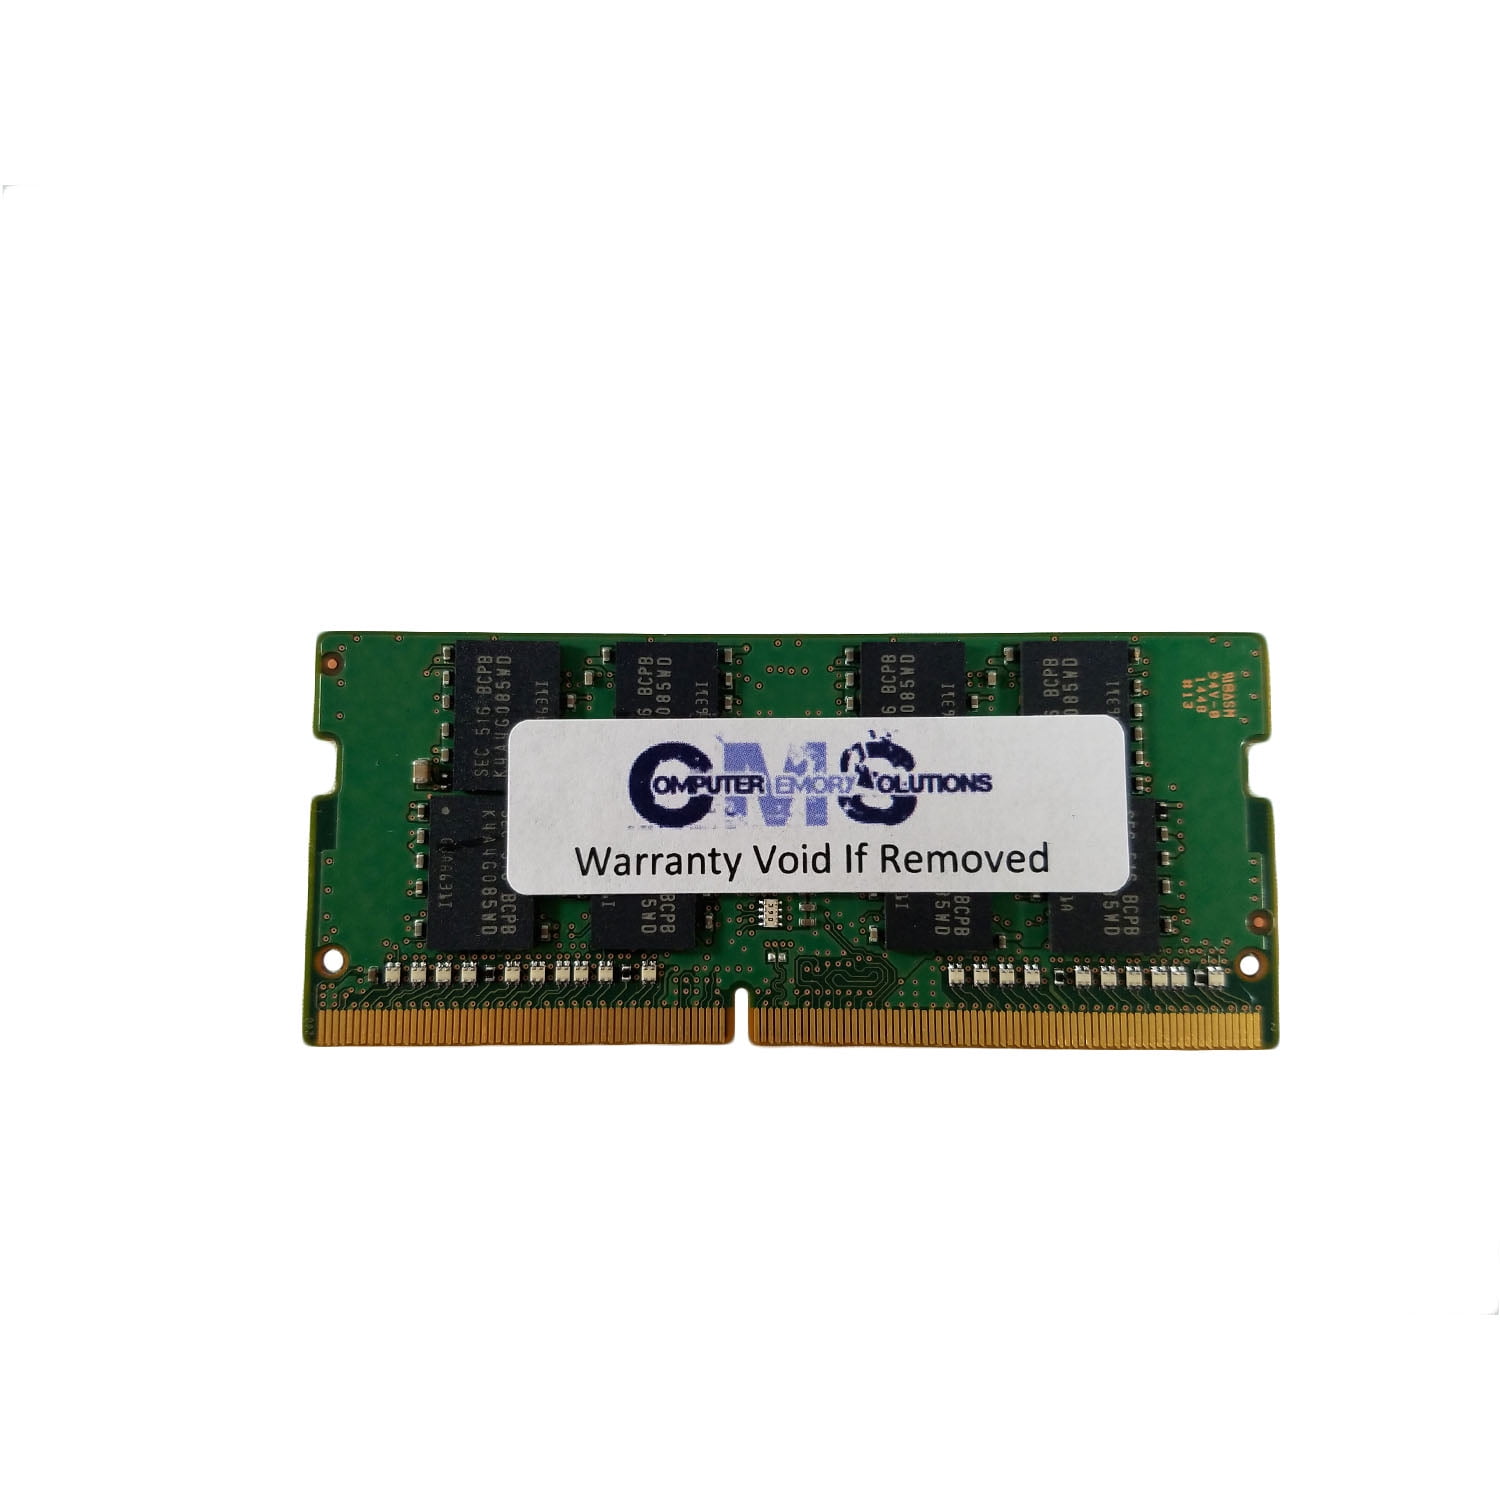 PC2700 2371KJU RAM Memory Upgrade for the IBM ThinkPad X40 Series X40 1GB DDR-333 